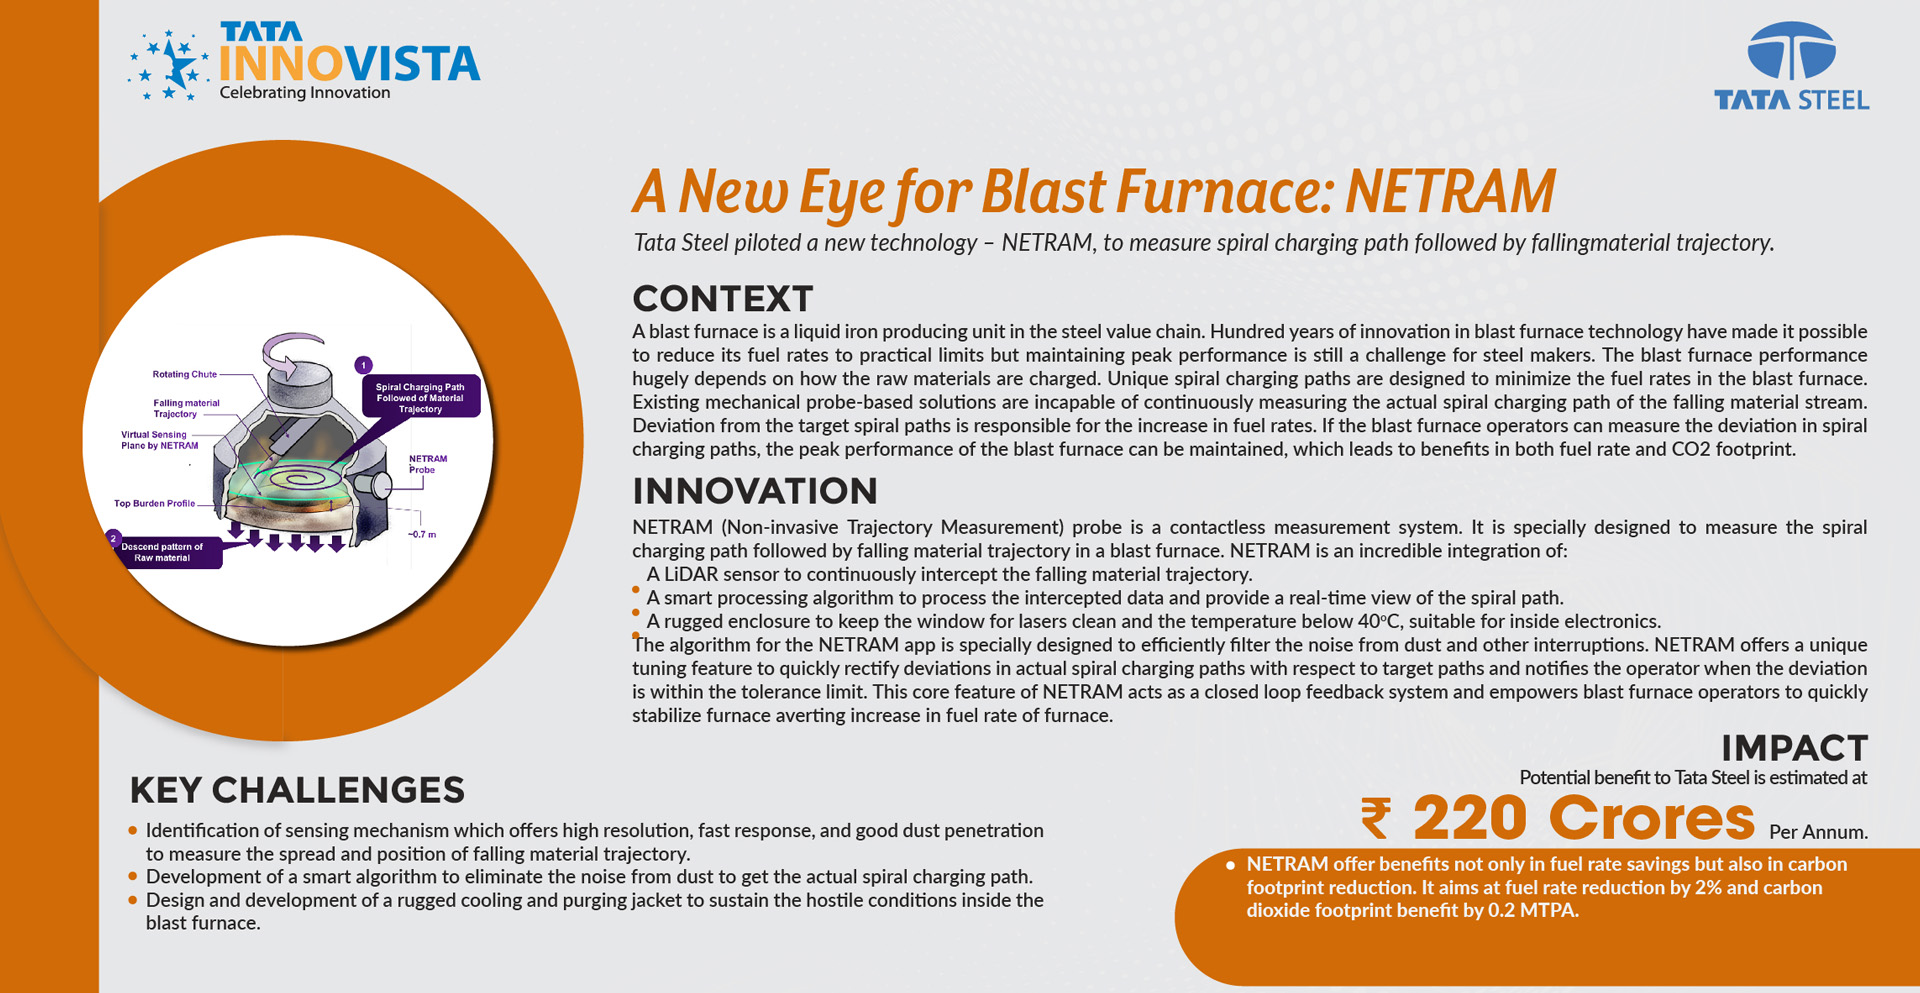 TATA STEEL - NETRAM - A new eye for blast furnace